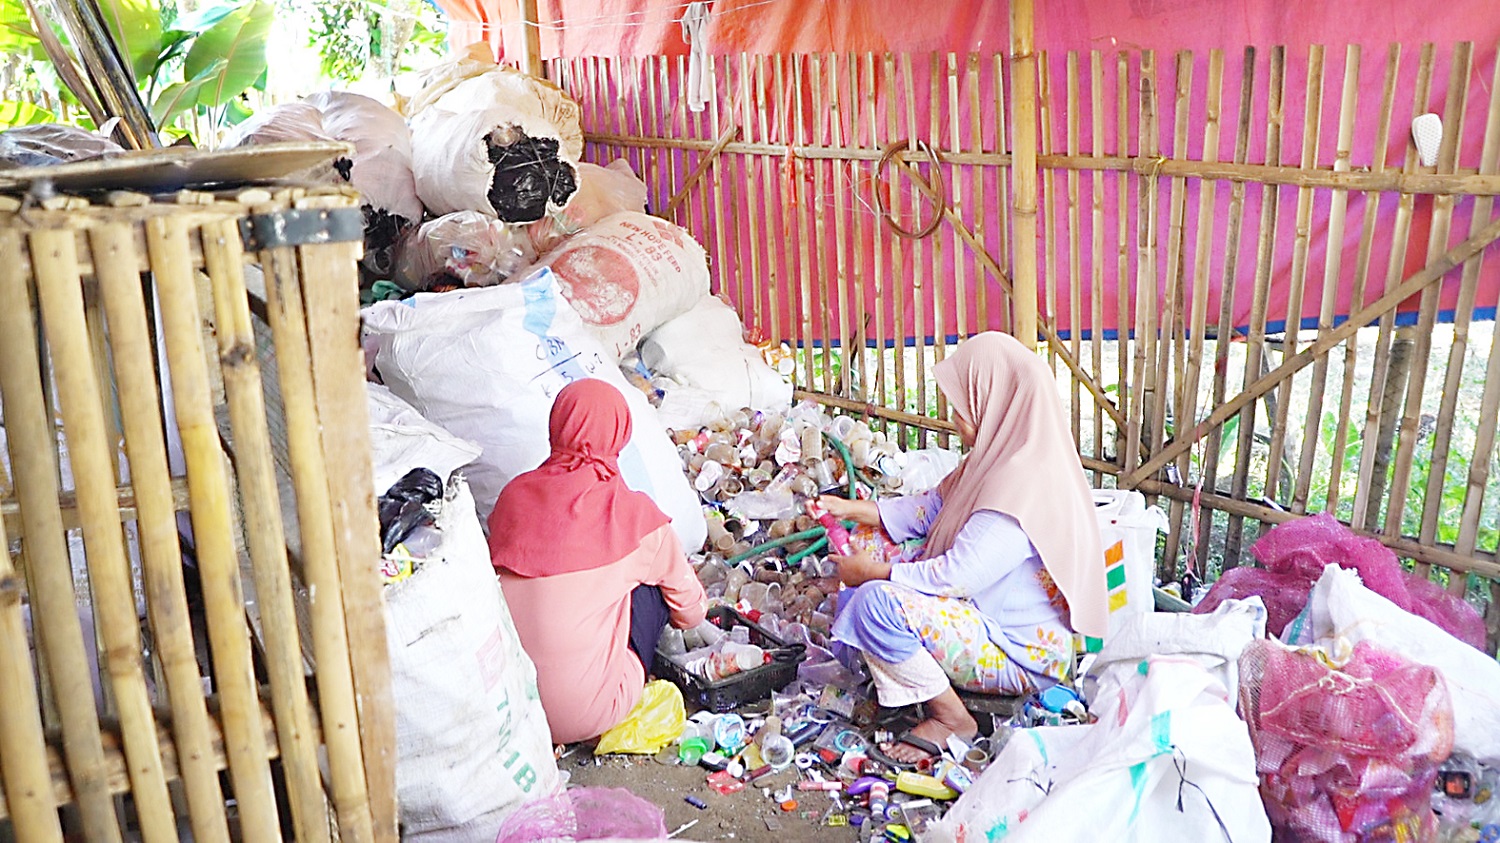 Menanggulangi Permasalahan Sampah, Masyarakat Kampung Mekarwangi Garut Sulap Sampah Jadi Rupiah